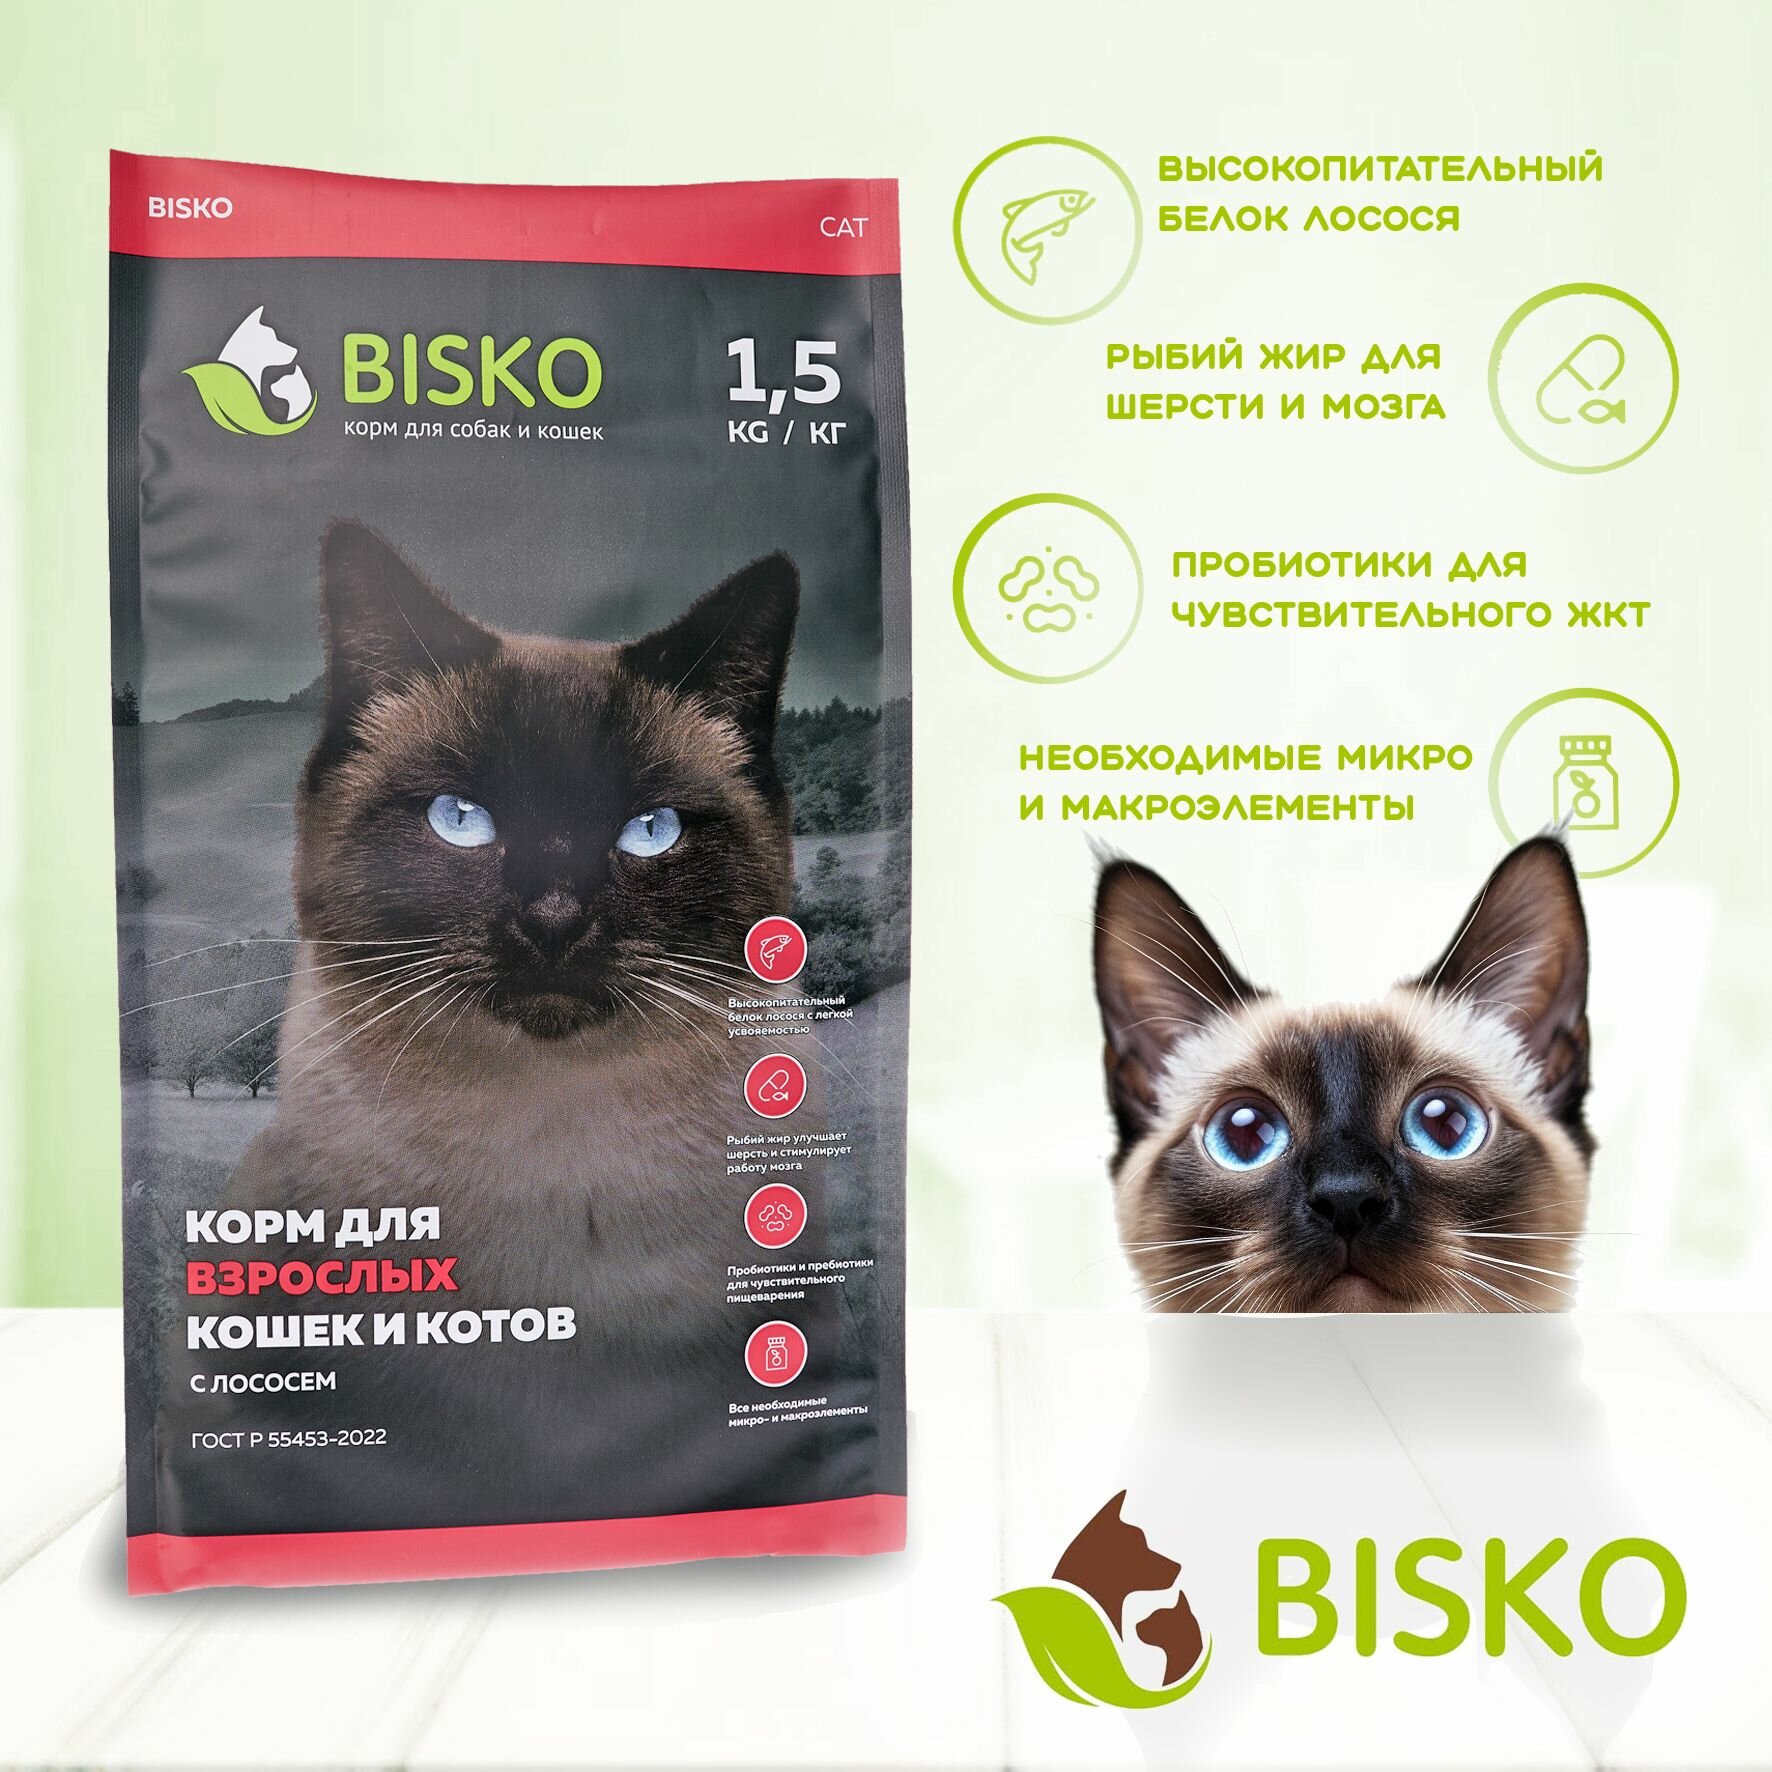 Сухой корм биско/BISKO для взрослых кошек и котов с лососем. 1,5 кг.